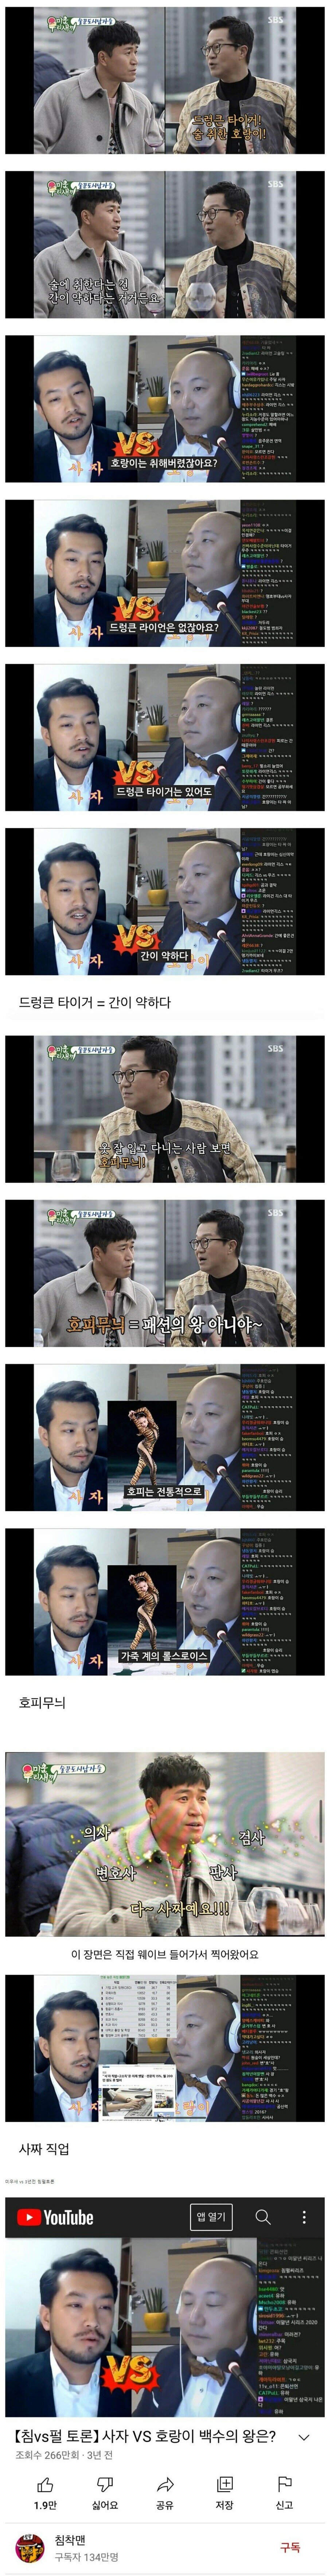 SBS미우새 침펄 토론 베끼기 논란